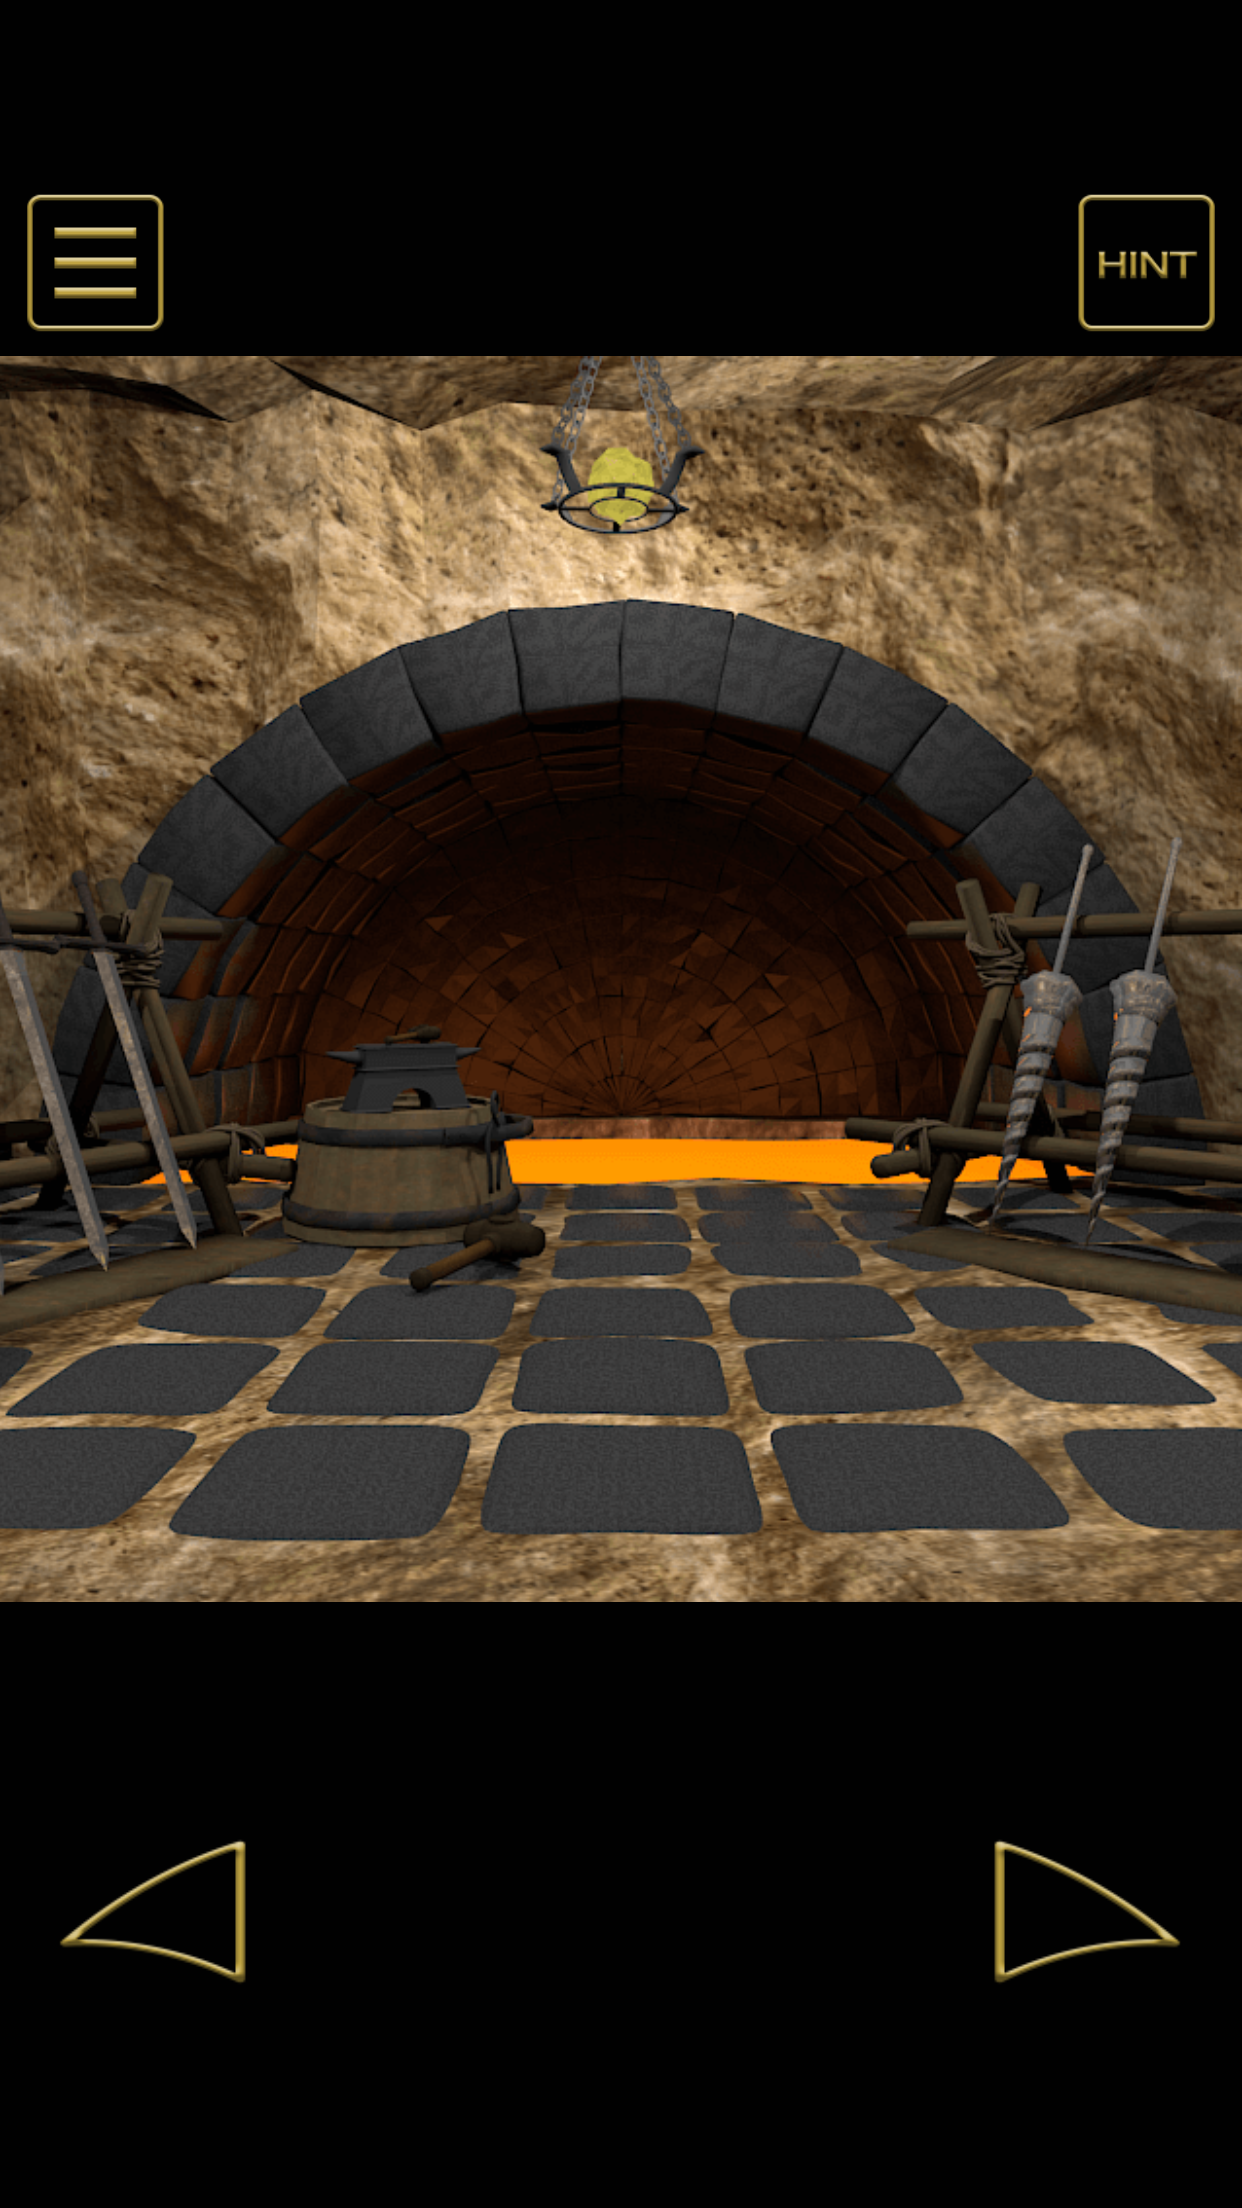 Screenshot 1 of Tumakas mula sa Underworld Thi 1.2.4